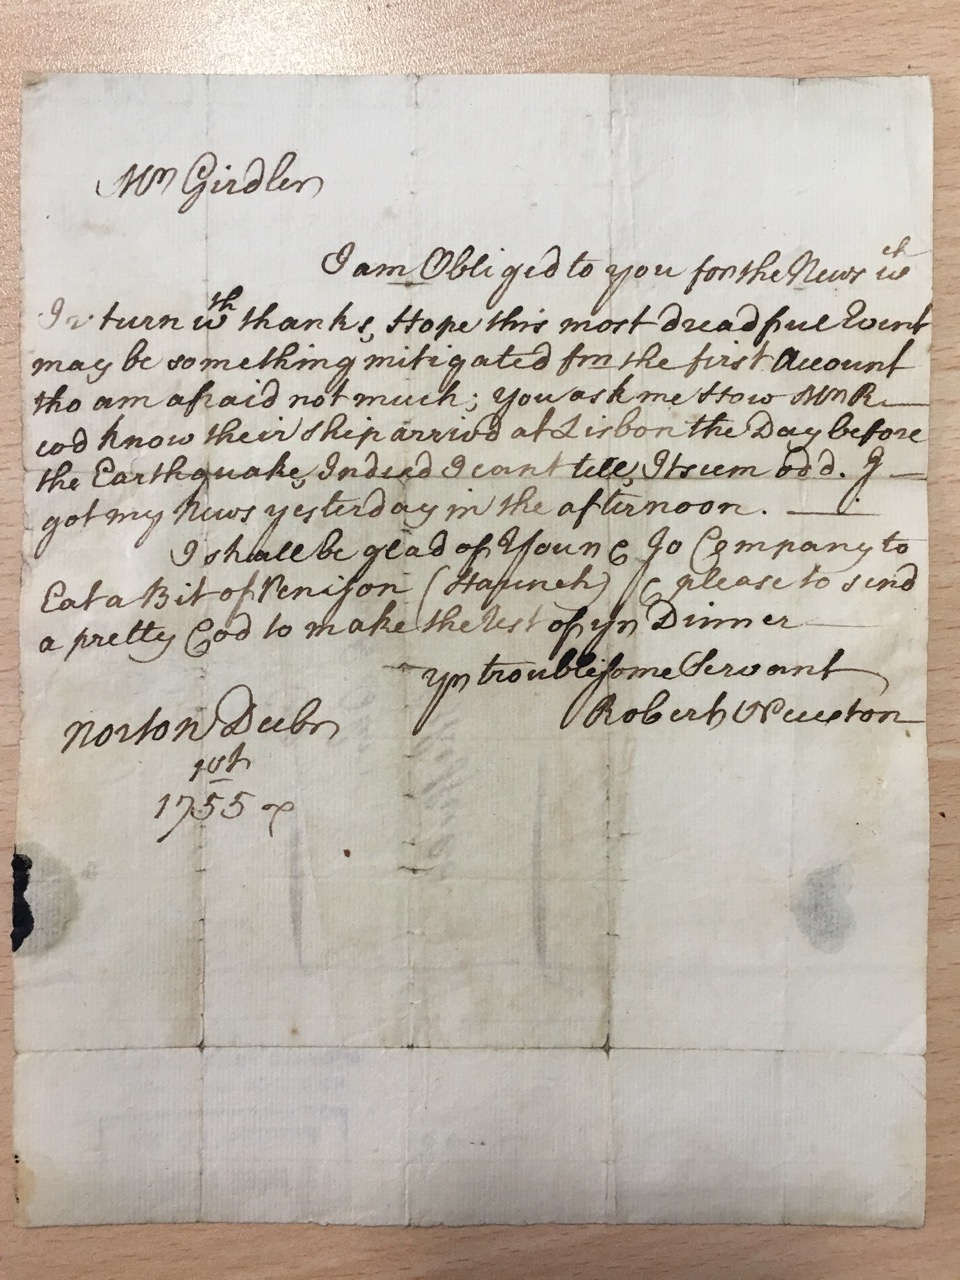 Image #1 of letter: Robert Newton to John Girdler, 1 December 1755